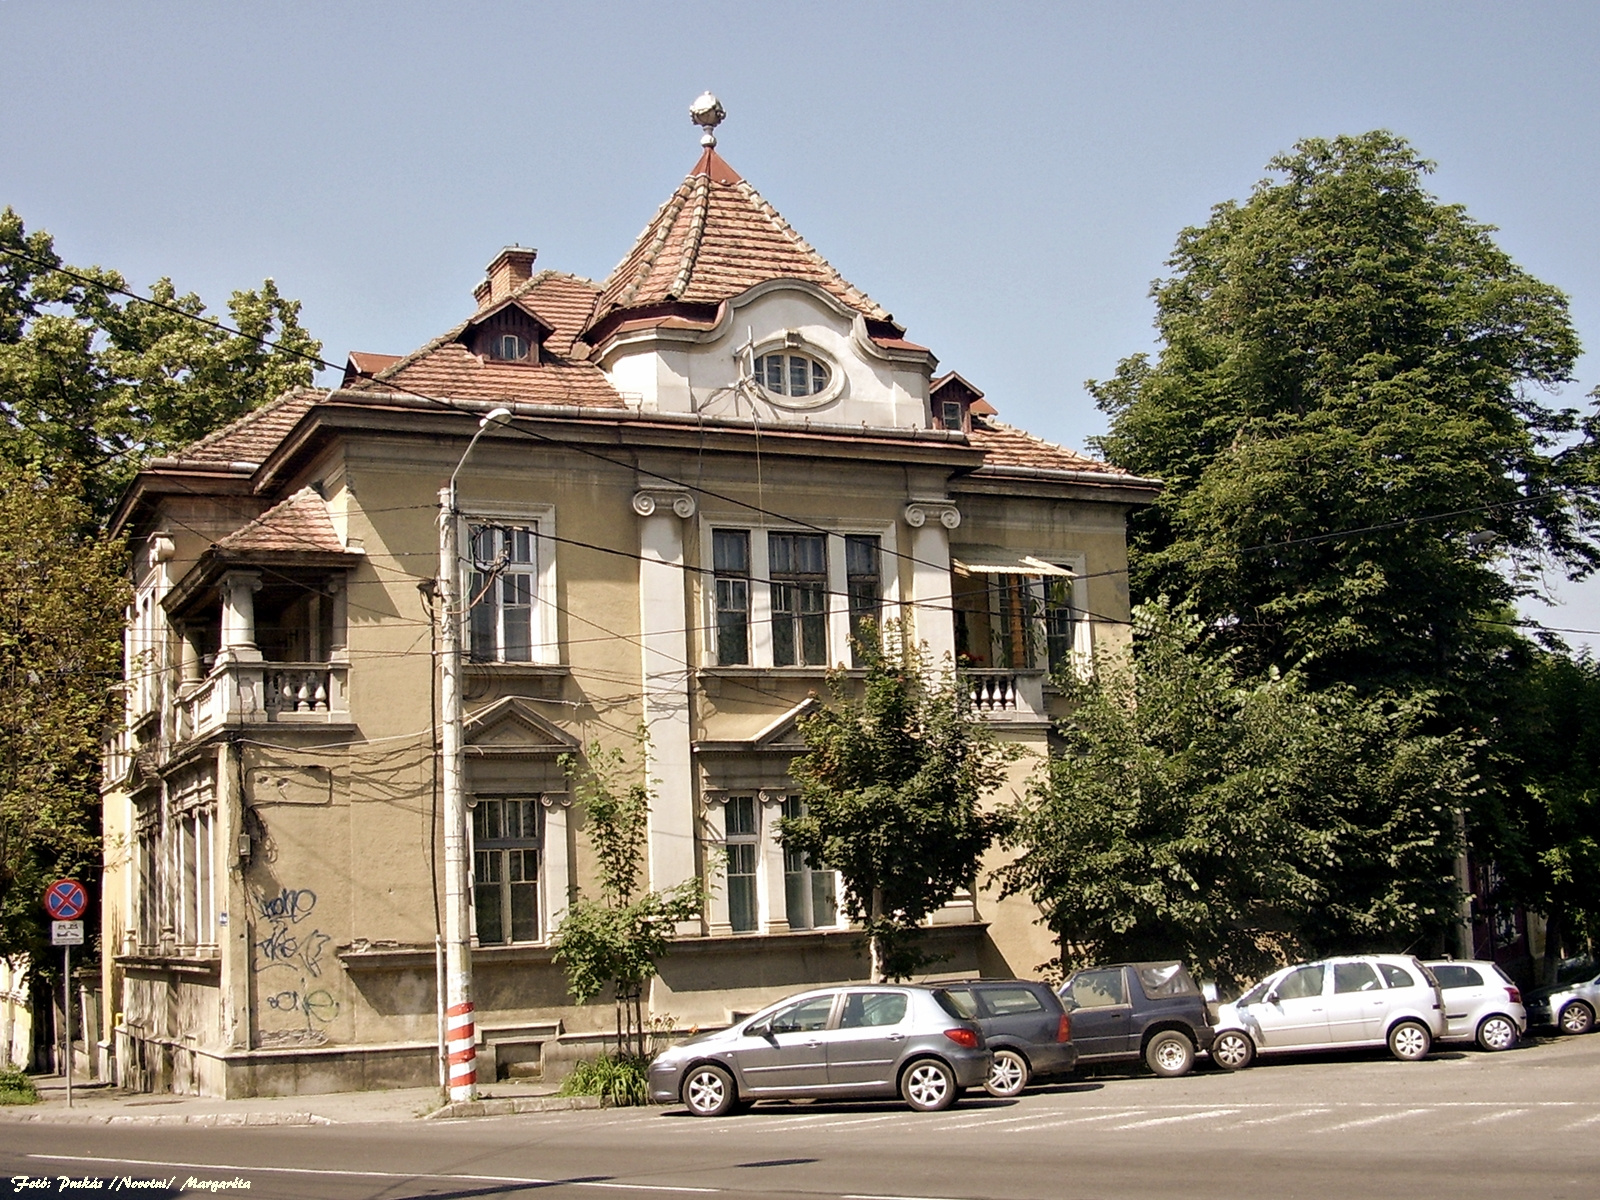 Marosvásárhely régi épületei- Klastrom utca (Mihai Viteazu most)